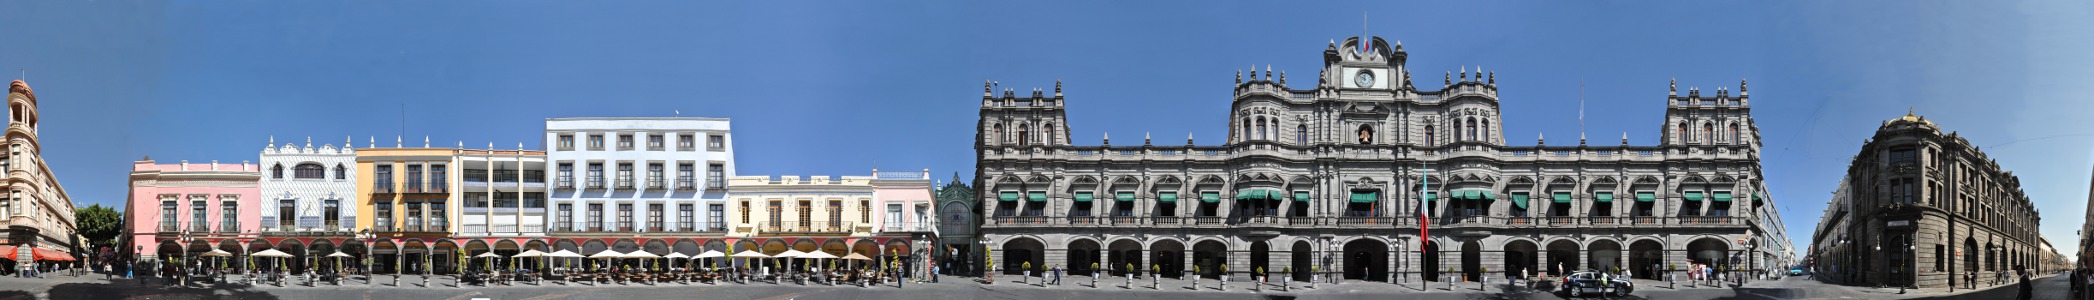 zocalo de mexico. Puebla - Don Juan de Palafox y